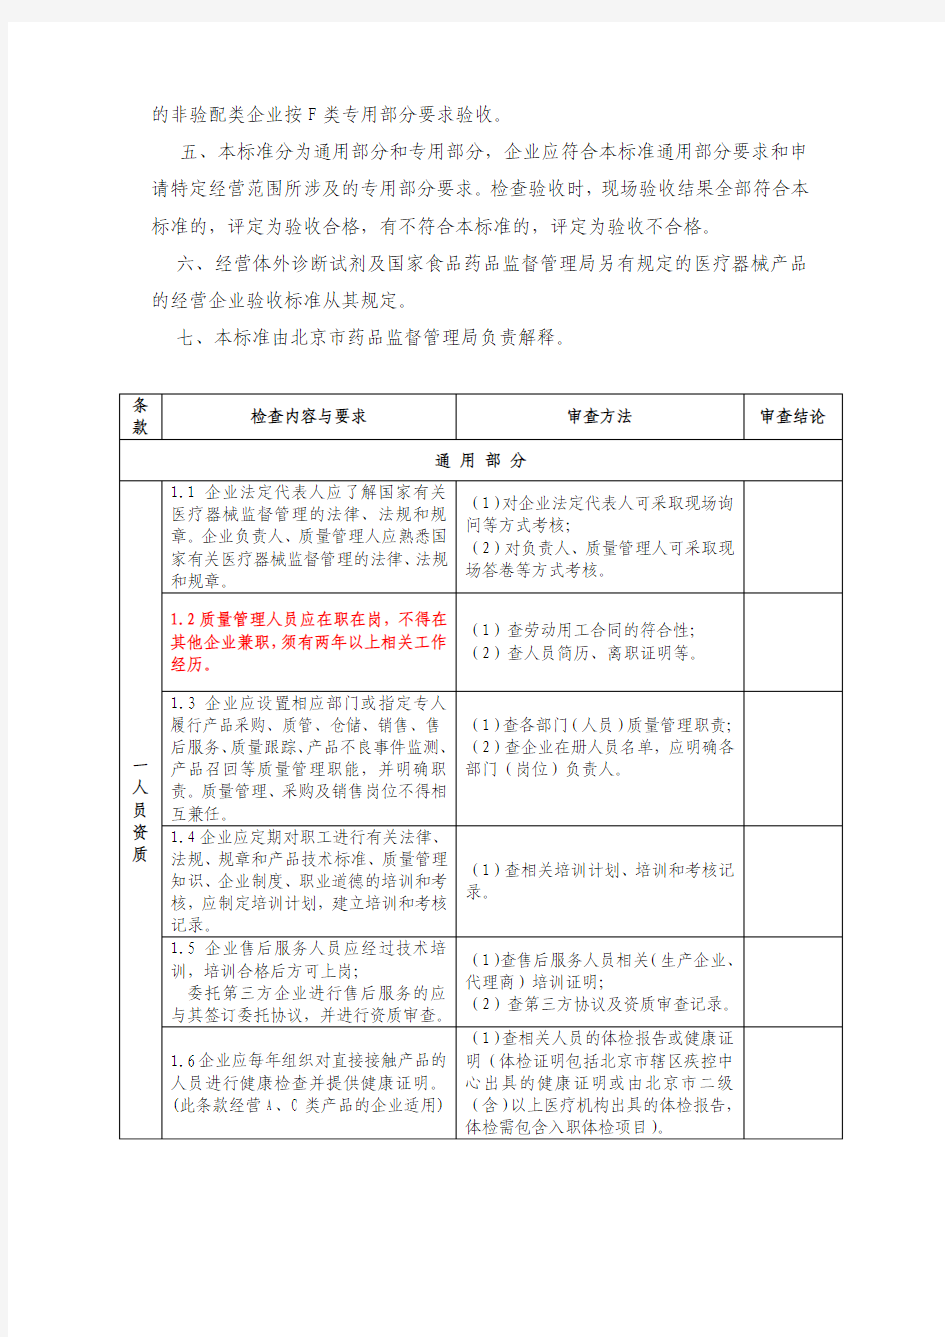 北京市医疗器械经营企业检查验收标准(2012.02.01开始实施)